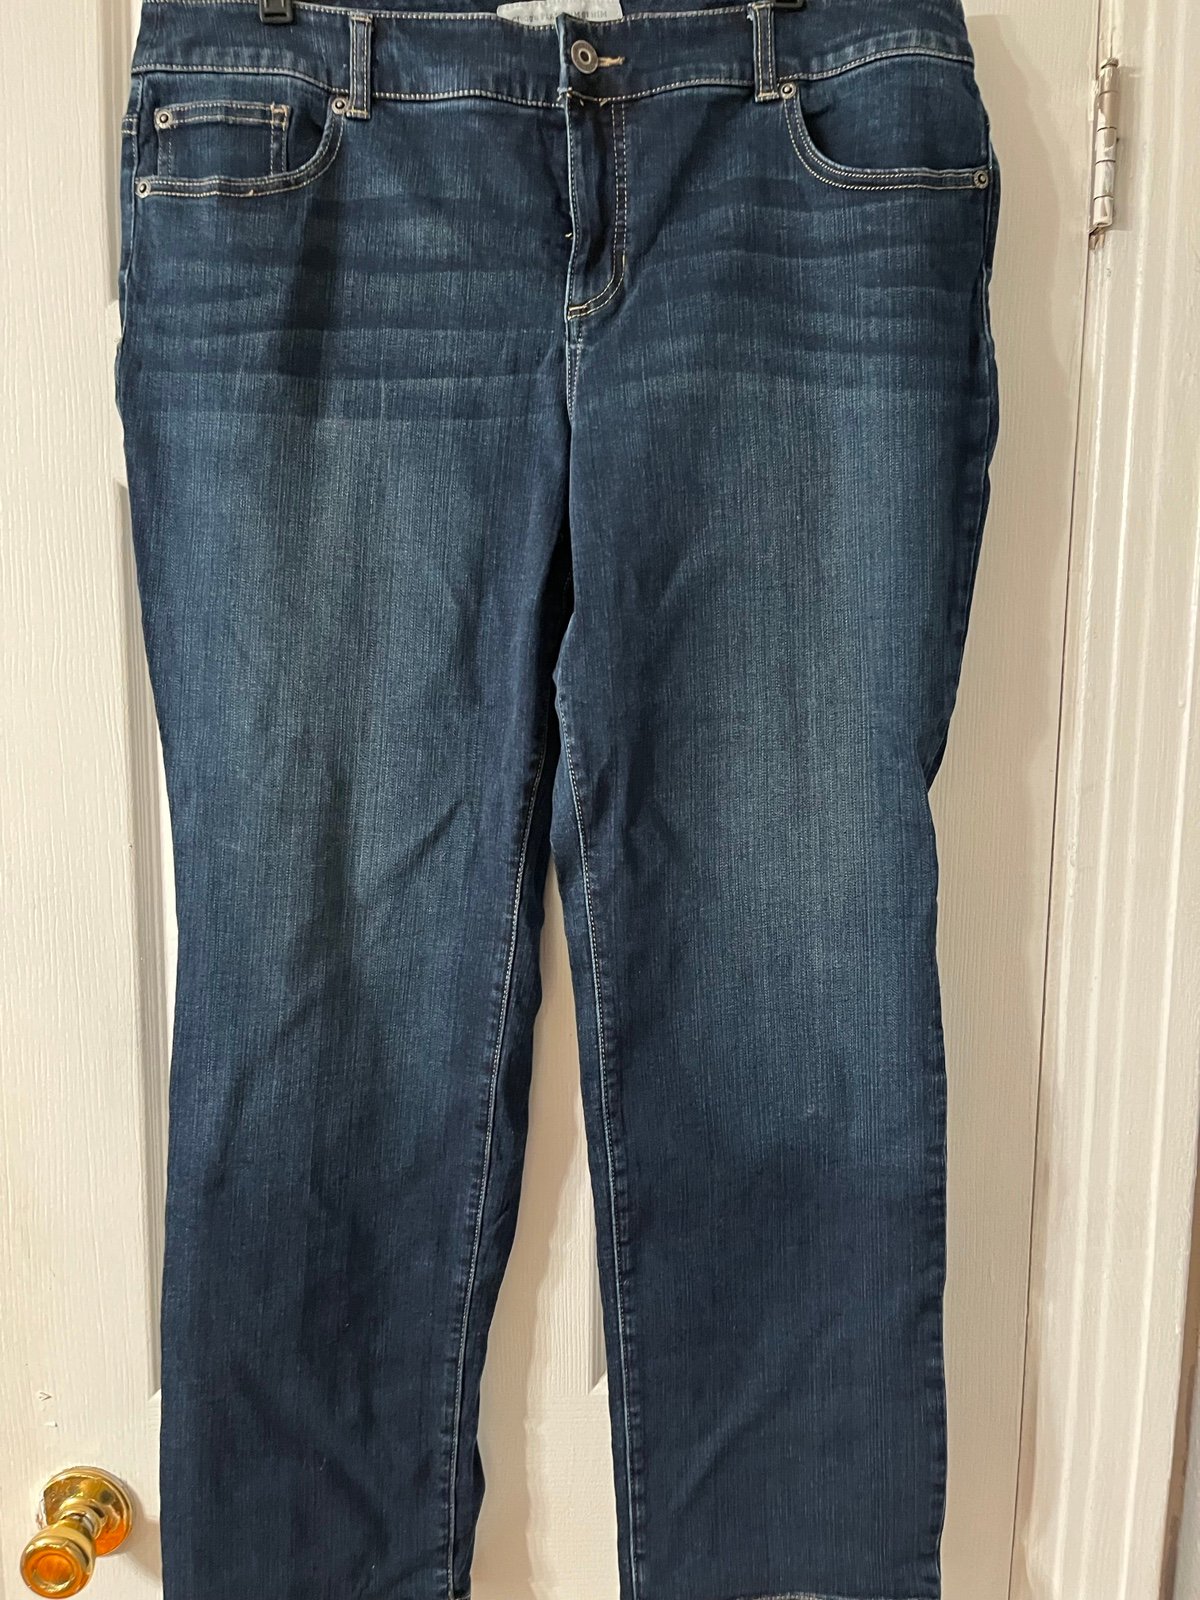 Latest  Chico’s Platinum Denim Size 3 Short Women’s Blue Denim Jeans 5 Pockets. Waist 40 HGv53zK2o Wholesale